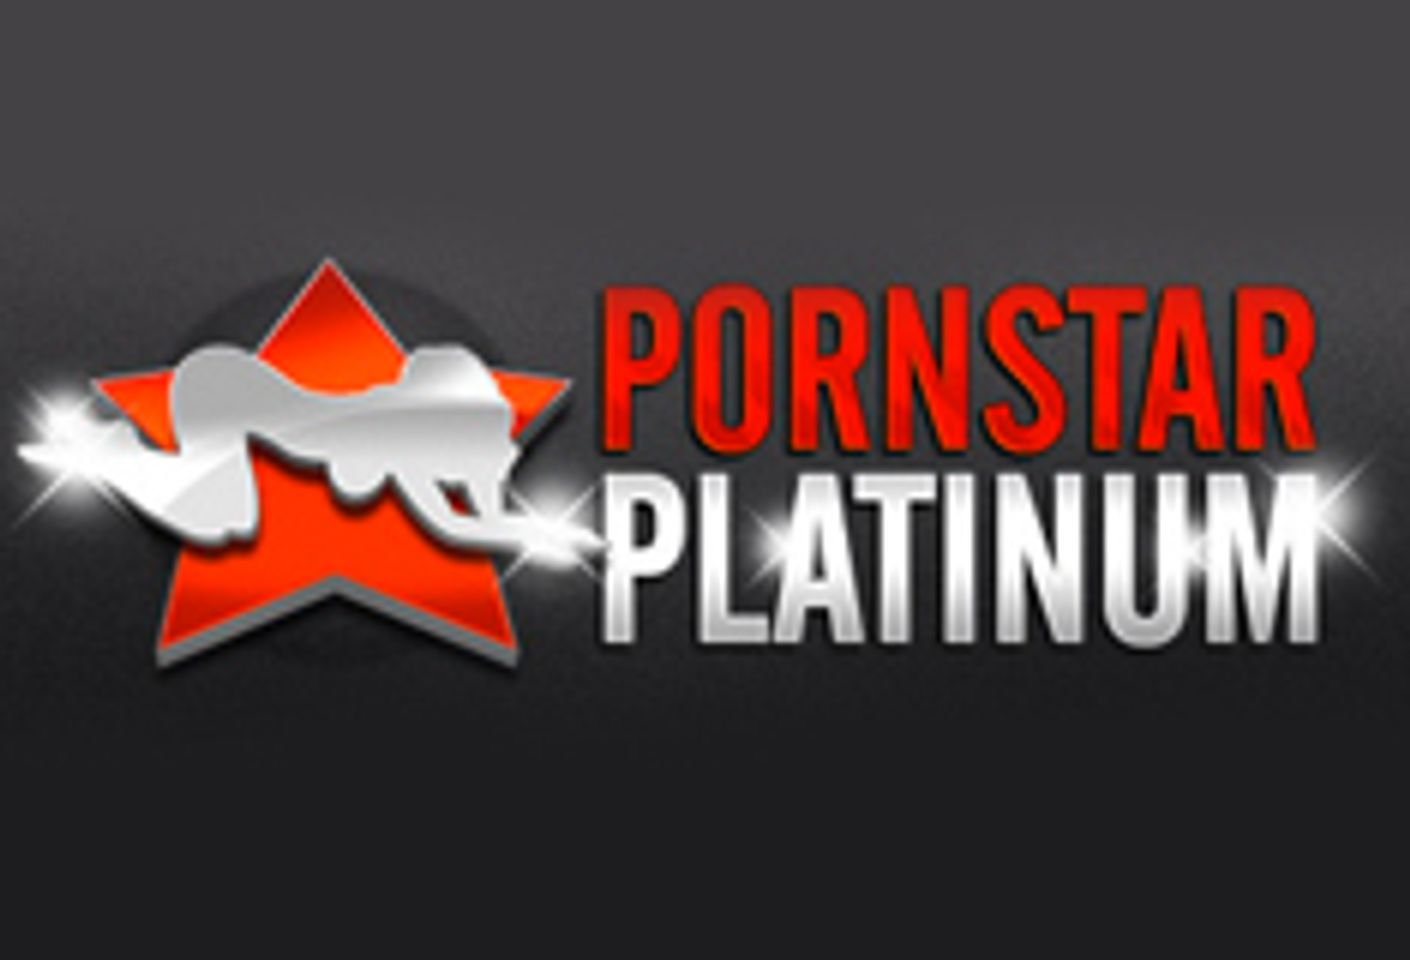 Pornstar Platinum Launches PornstarJustice.com